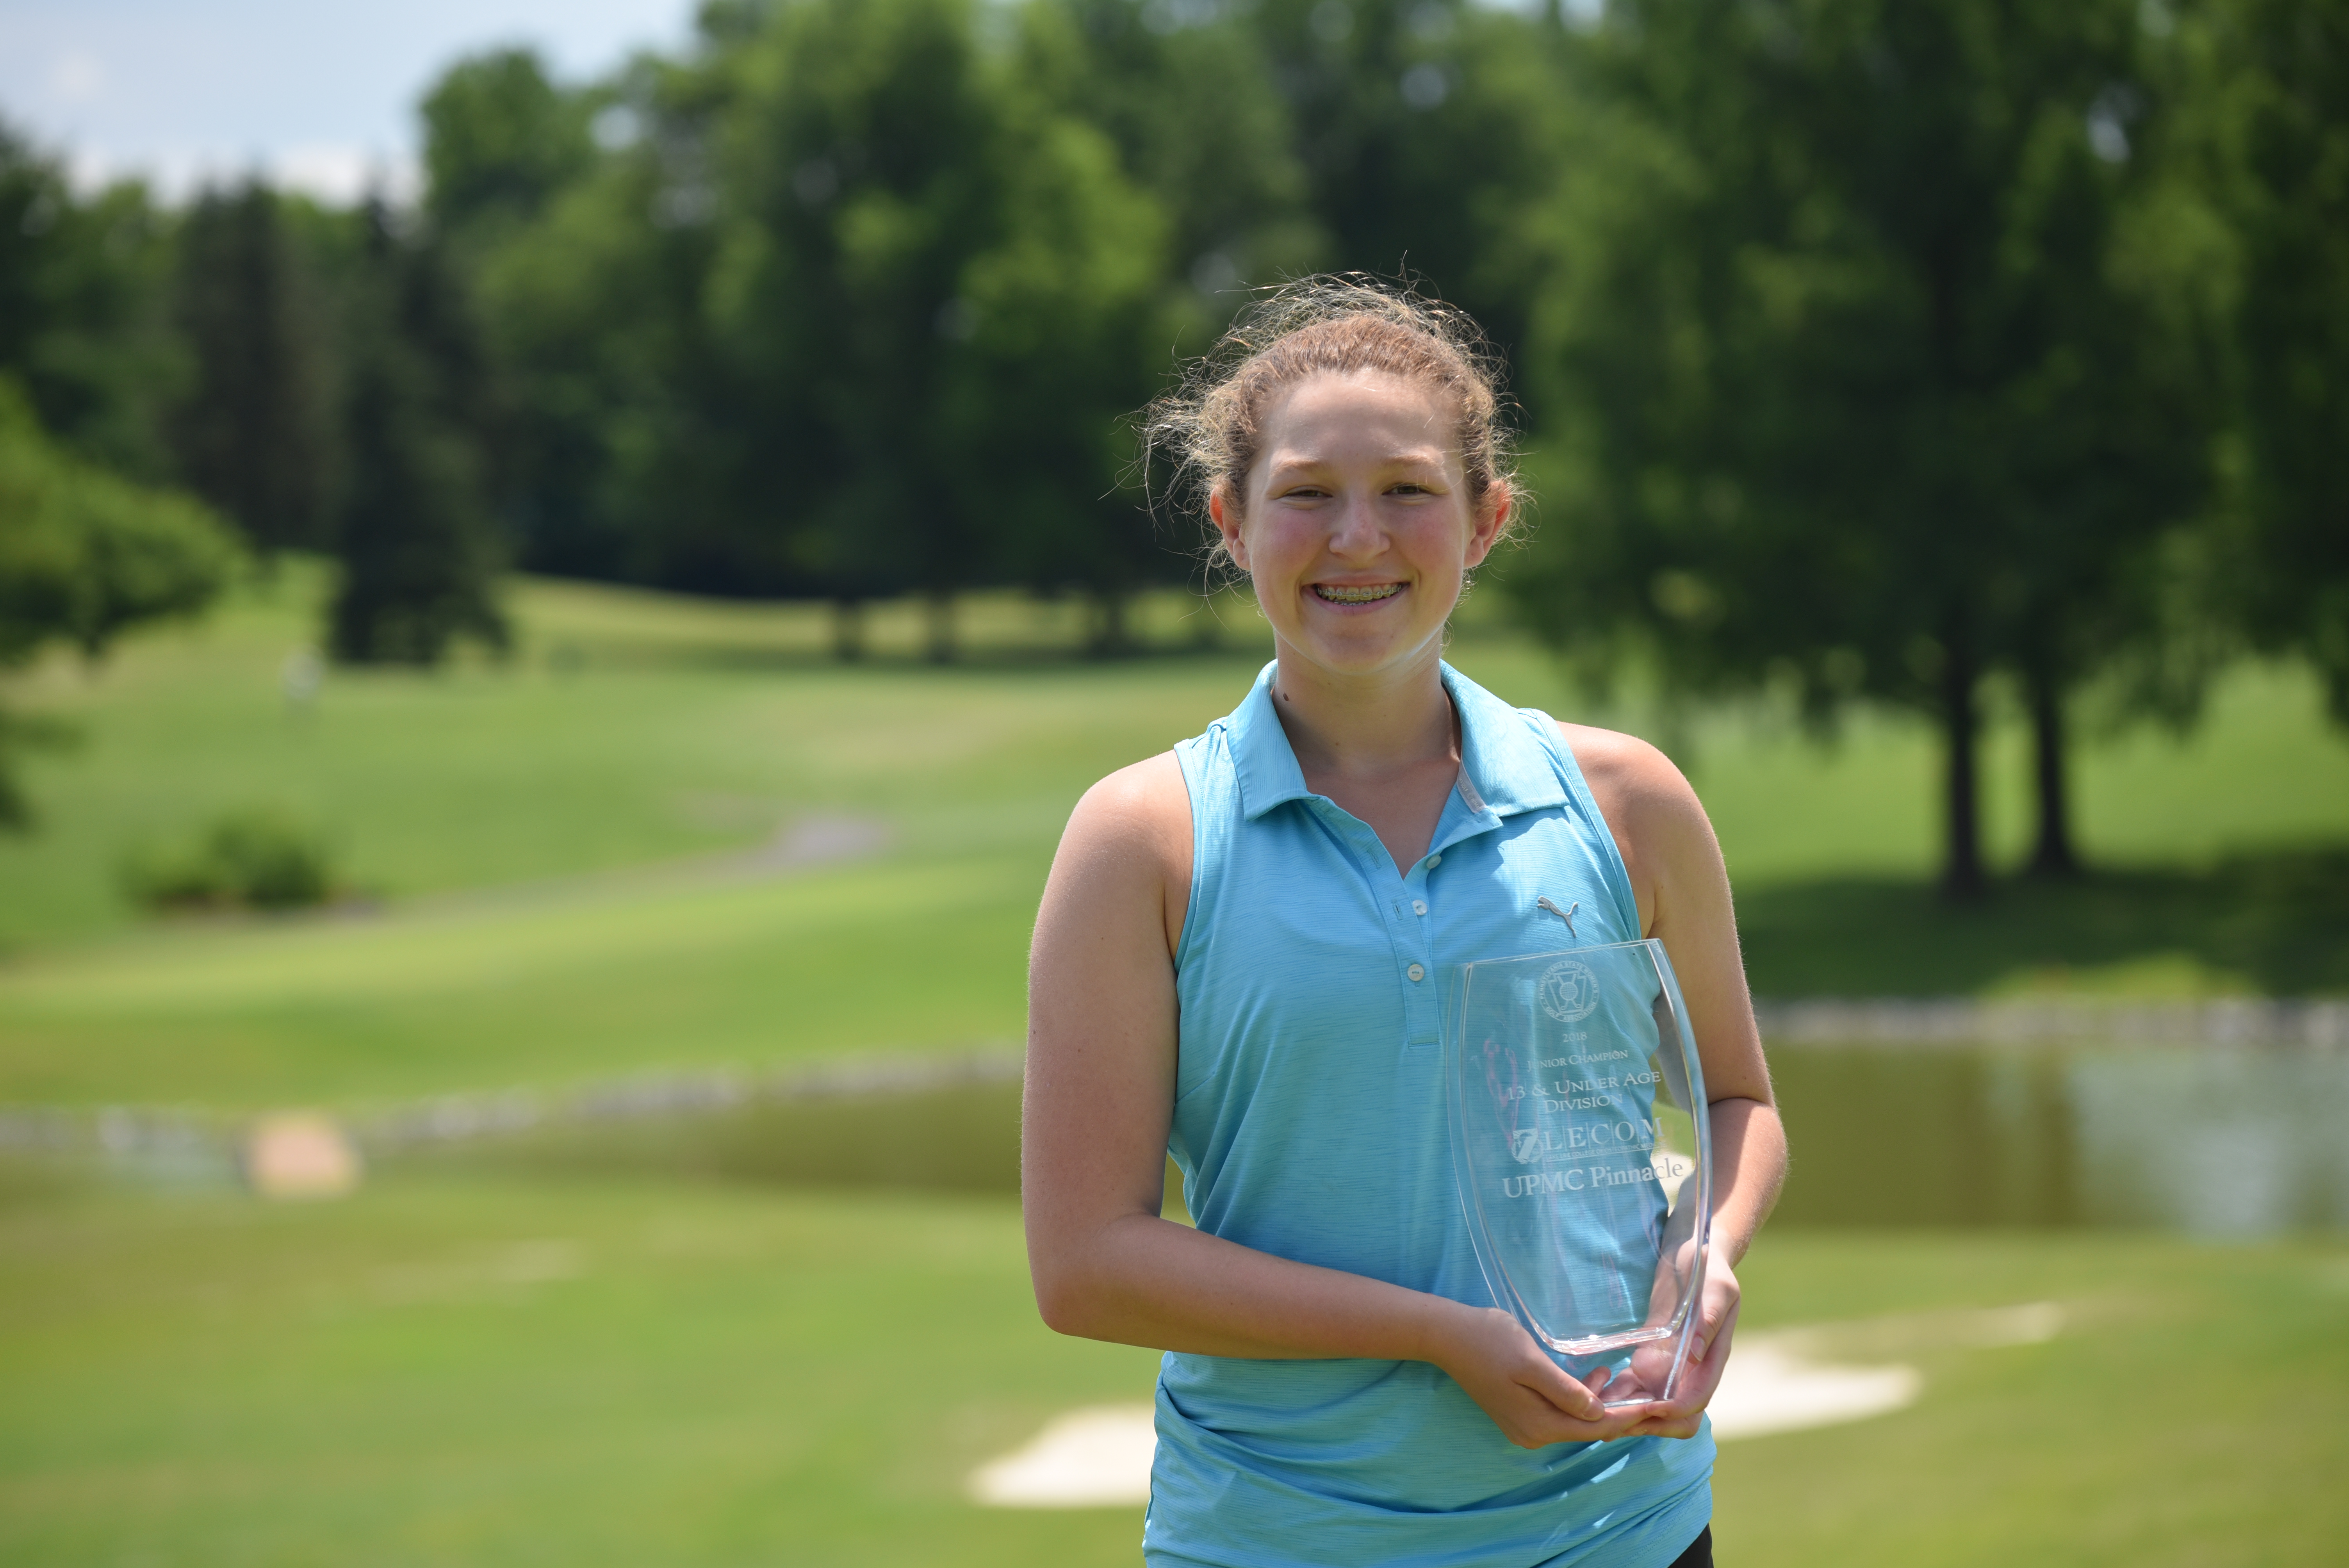 2018 Junior-Junior Girls' Champion Megan Adelman of Bala Golf Club.